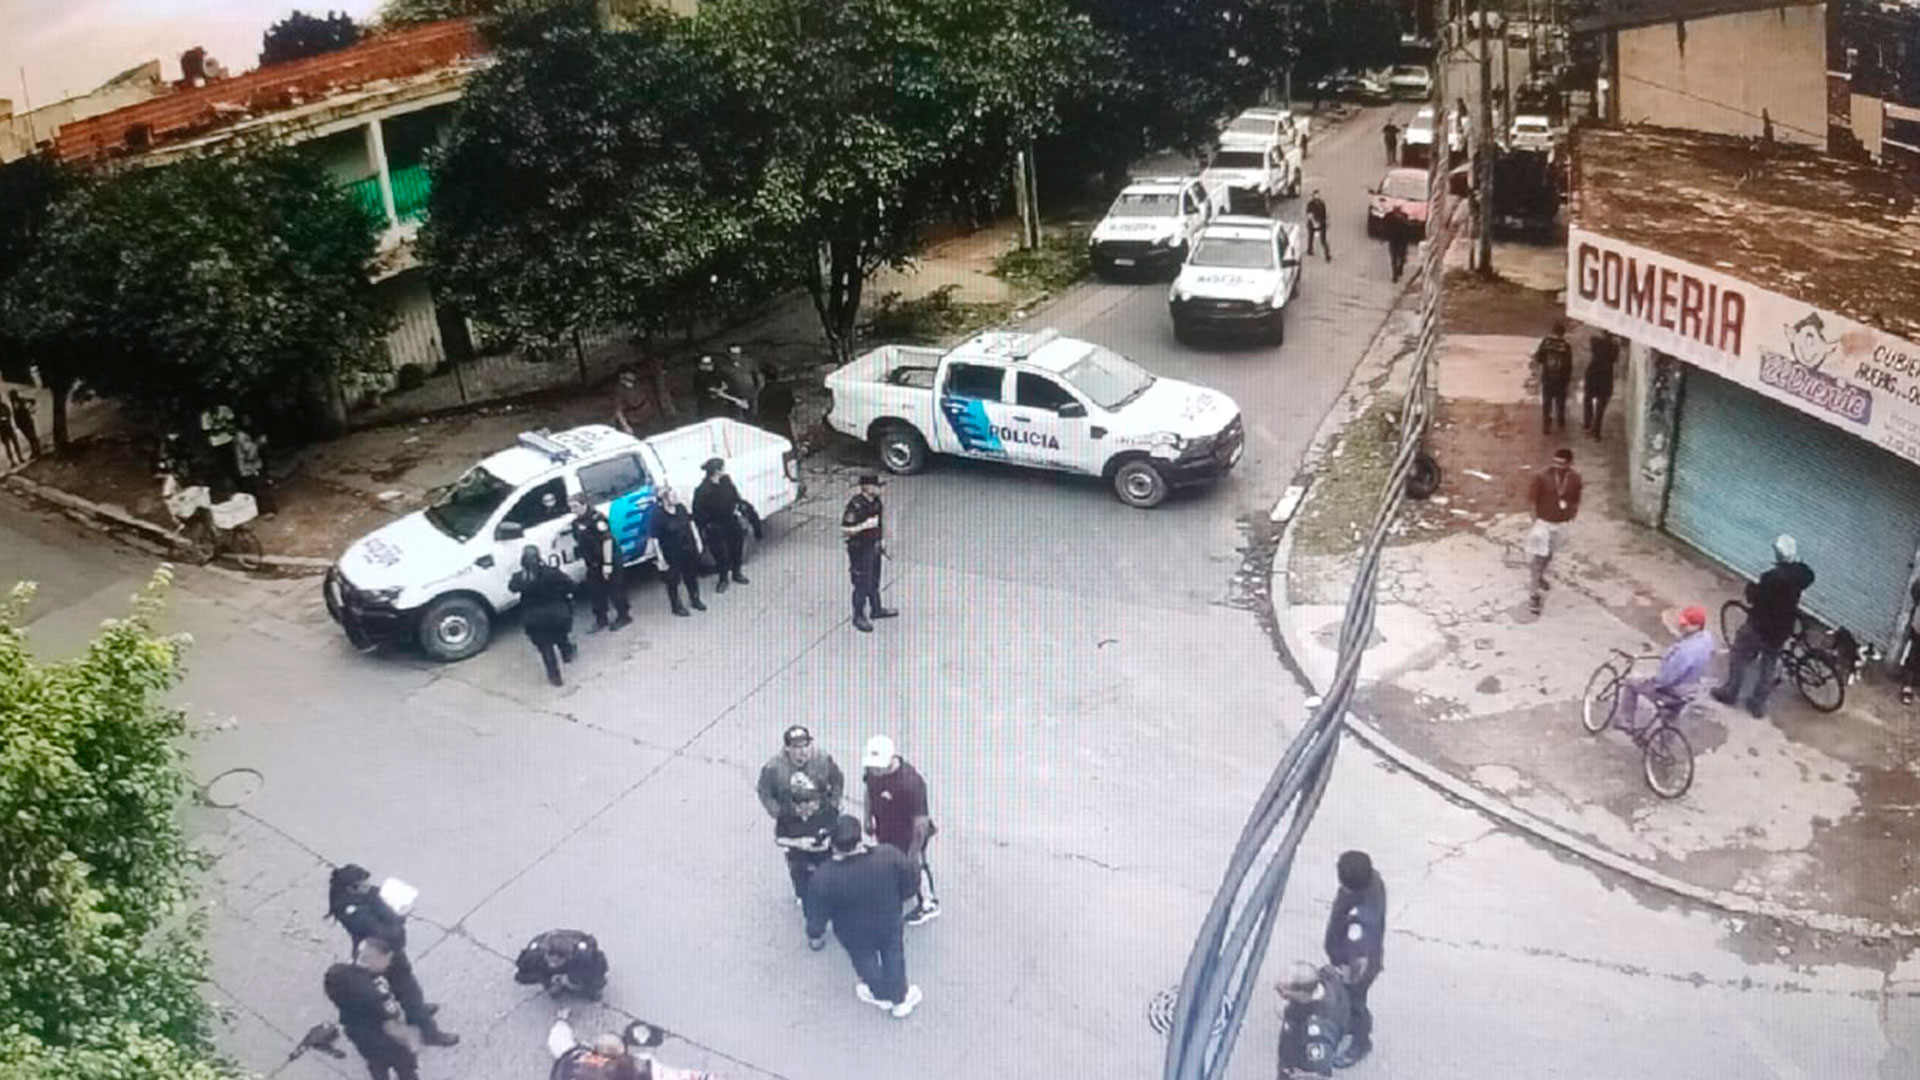 Fuego cruzado y persecución: policías y ladrones a los tiros en La Matanza tras el robo de una camioneta